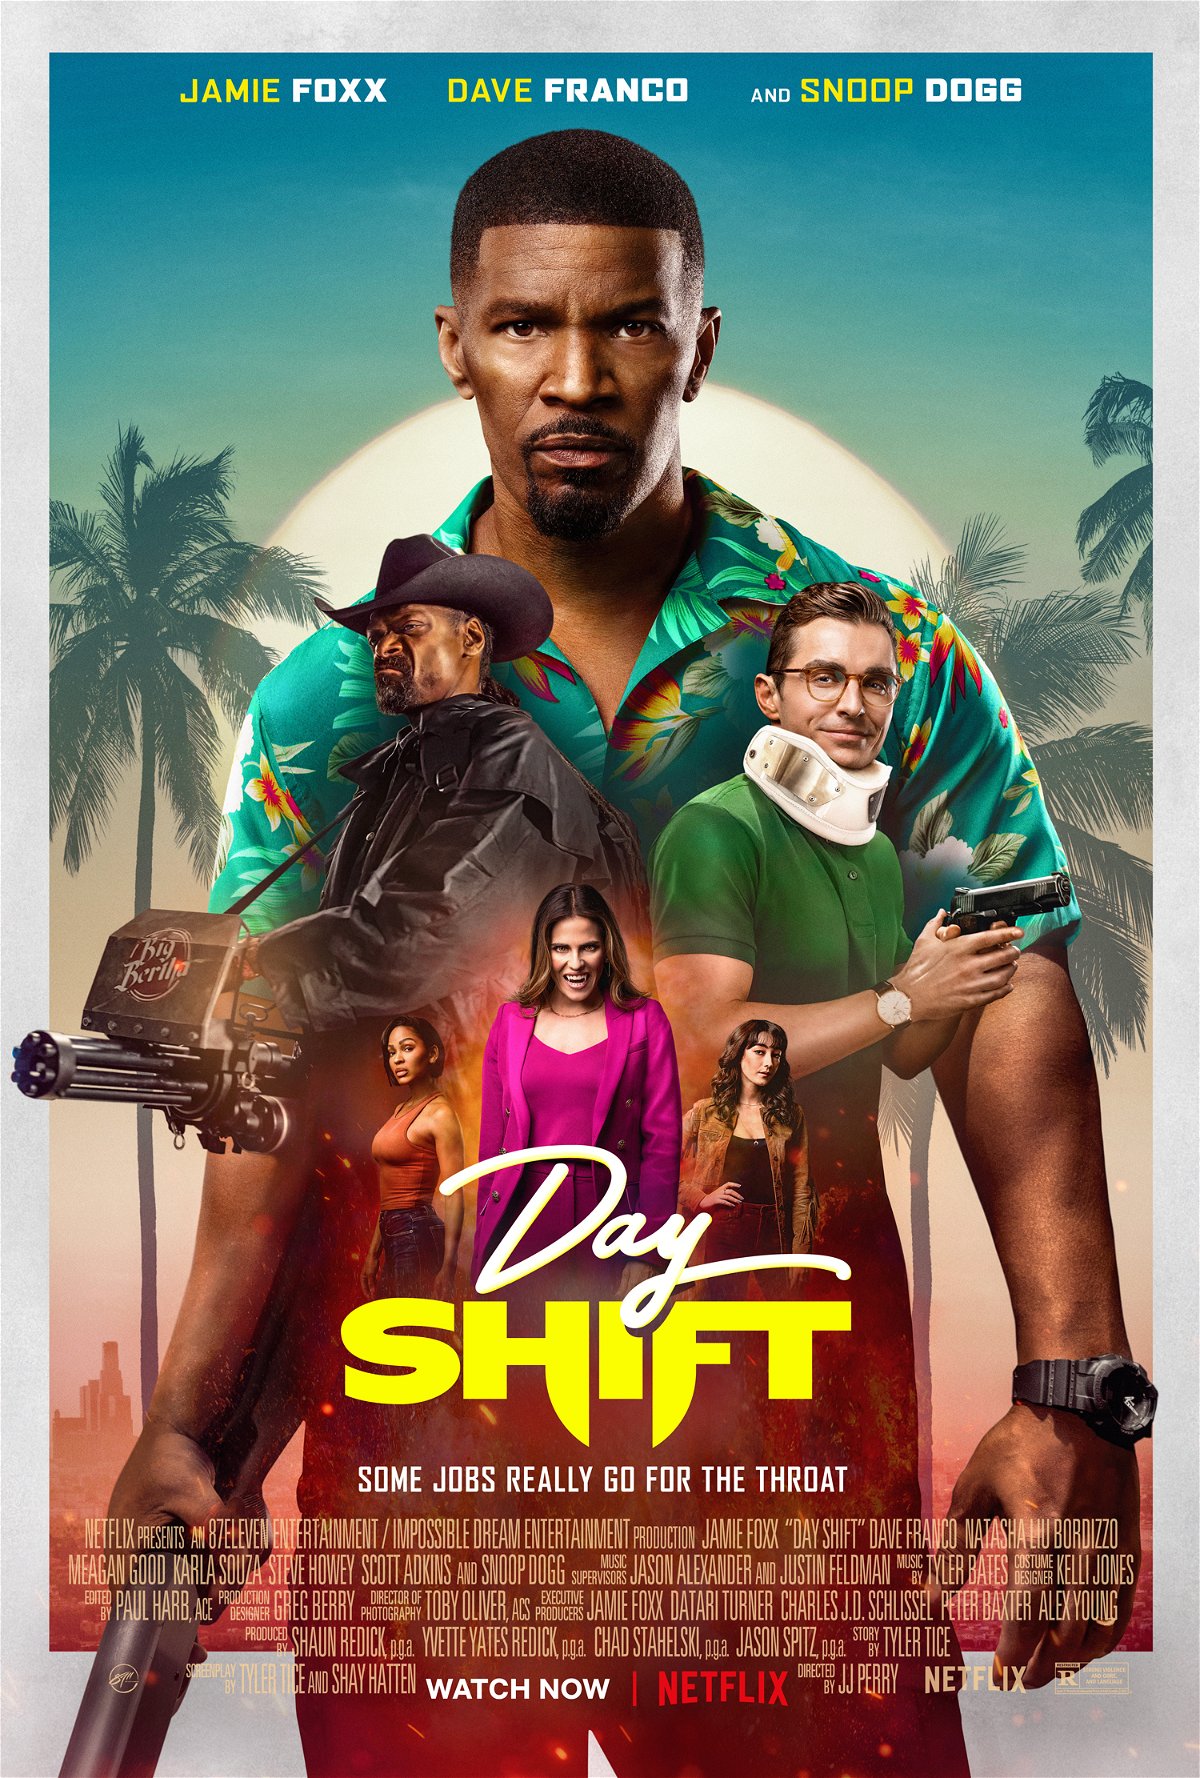 Day Shift - Jamie Foxx e gli altri personaggi nel poster del film Netflix